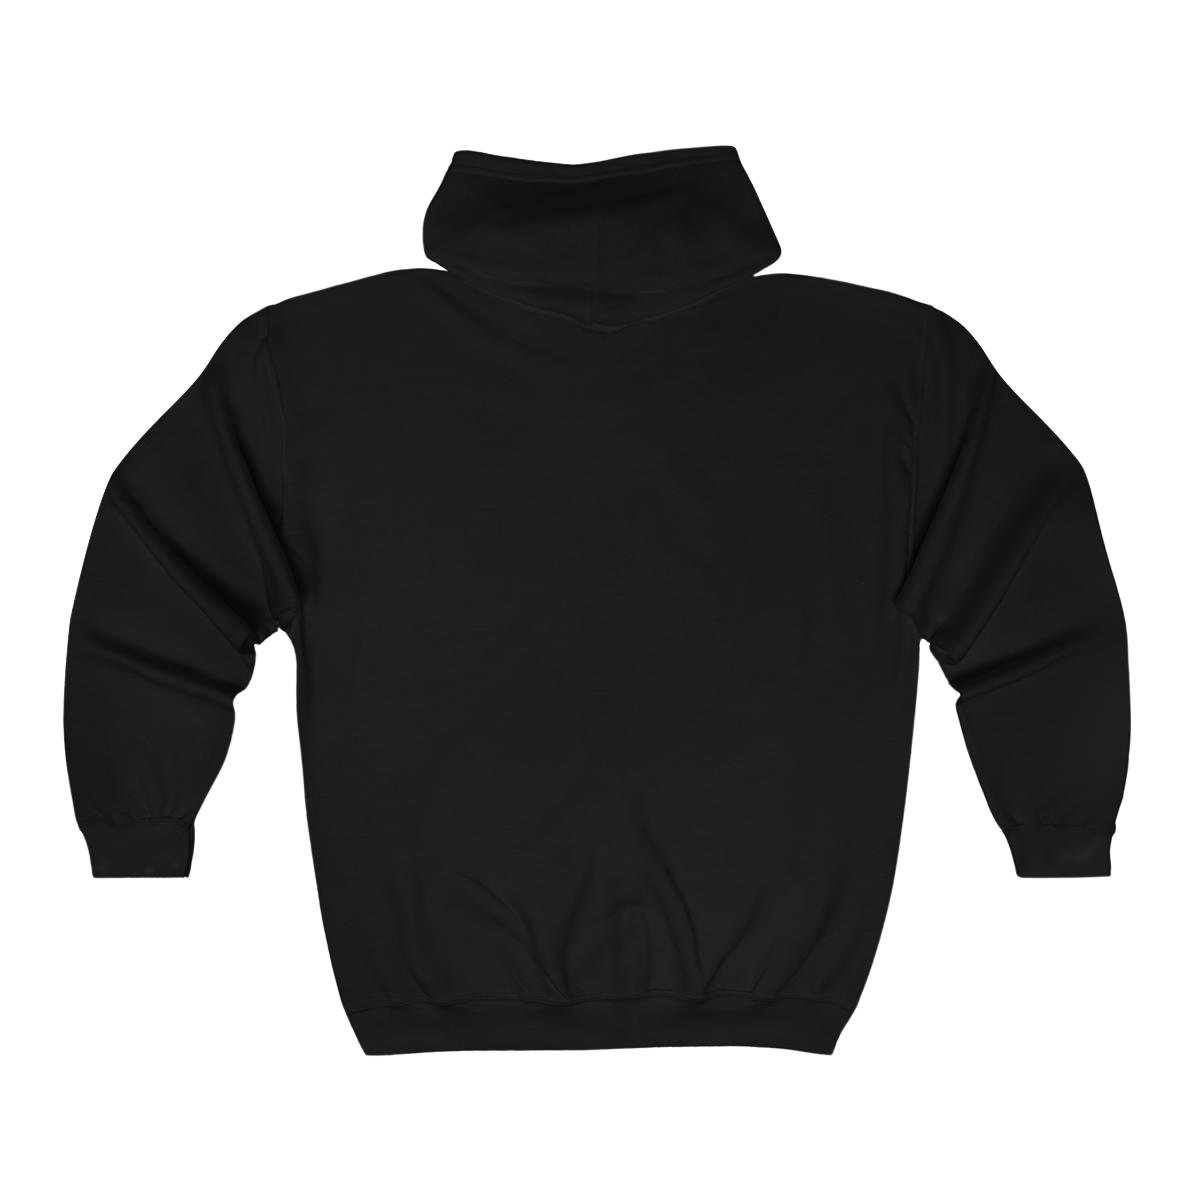 Fear Not – Riptide Full Zip Hooded Sweatshirt